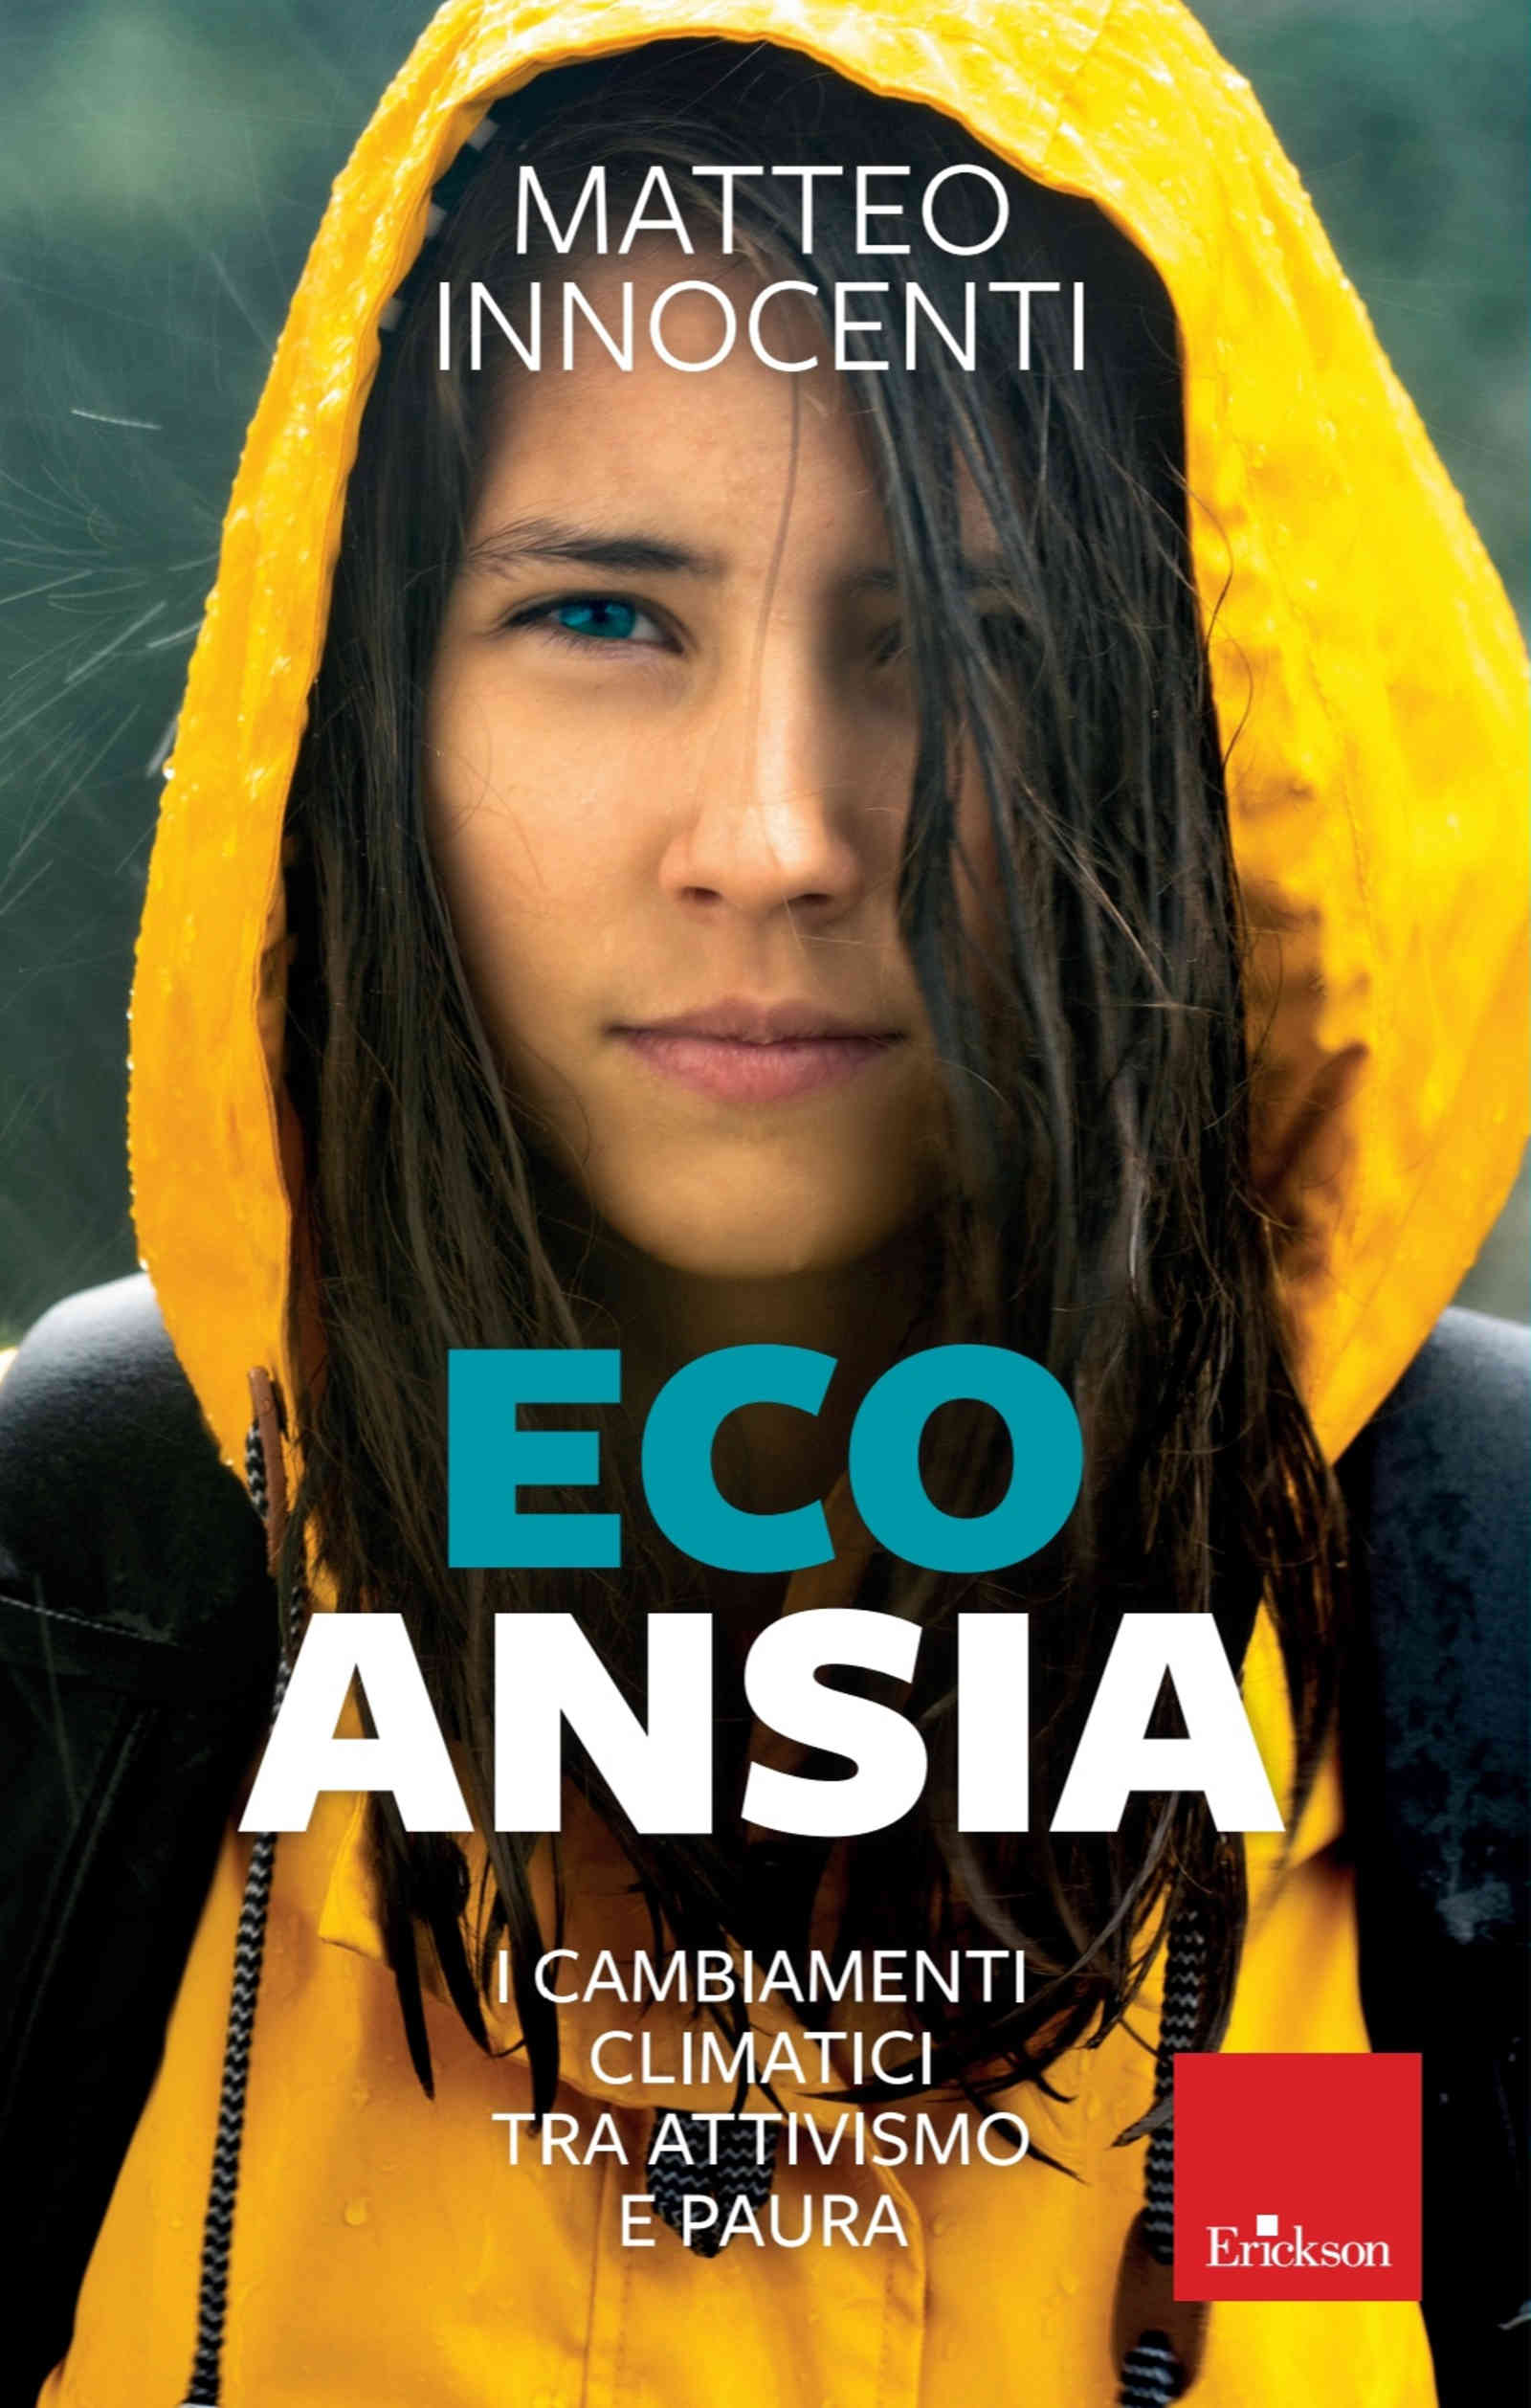 Eco ansia (2022) di Matteo Innocenti – Recensione del libro